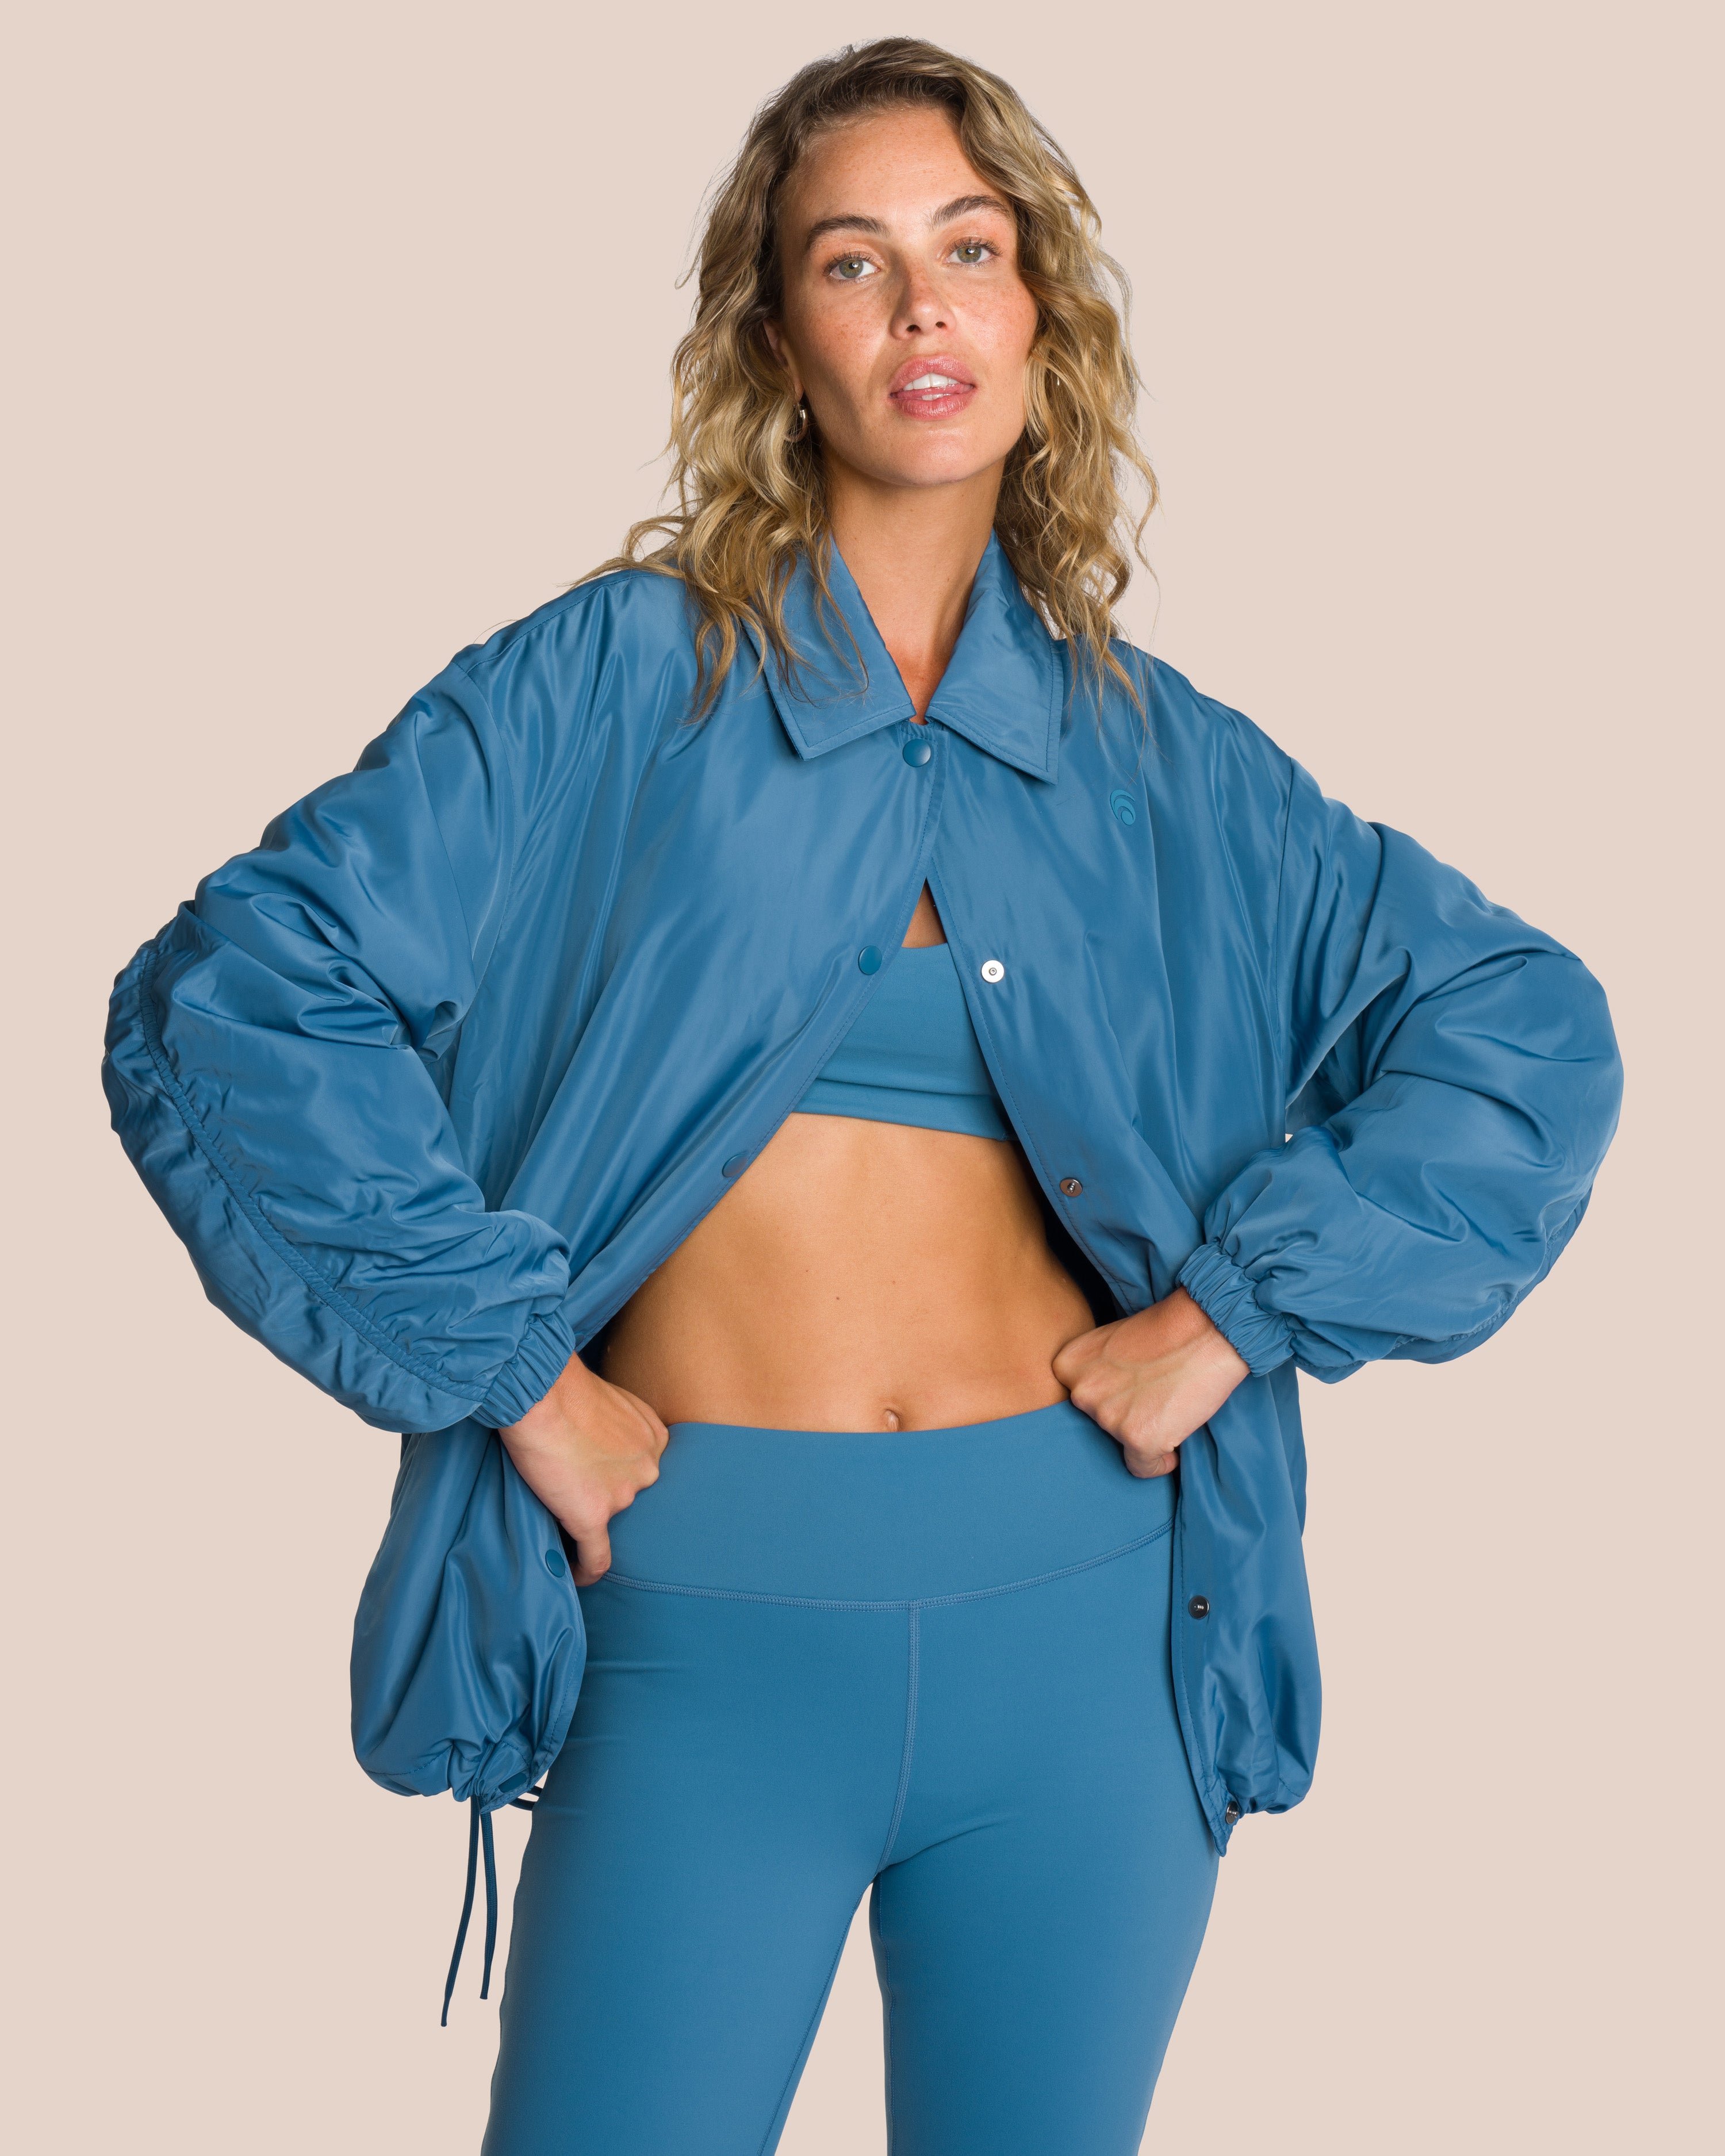 Shania Jumpsuit Set - Ice Blue Swirl & Teal